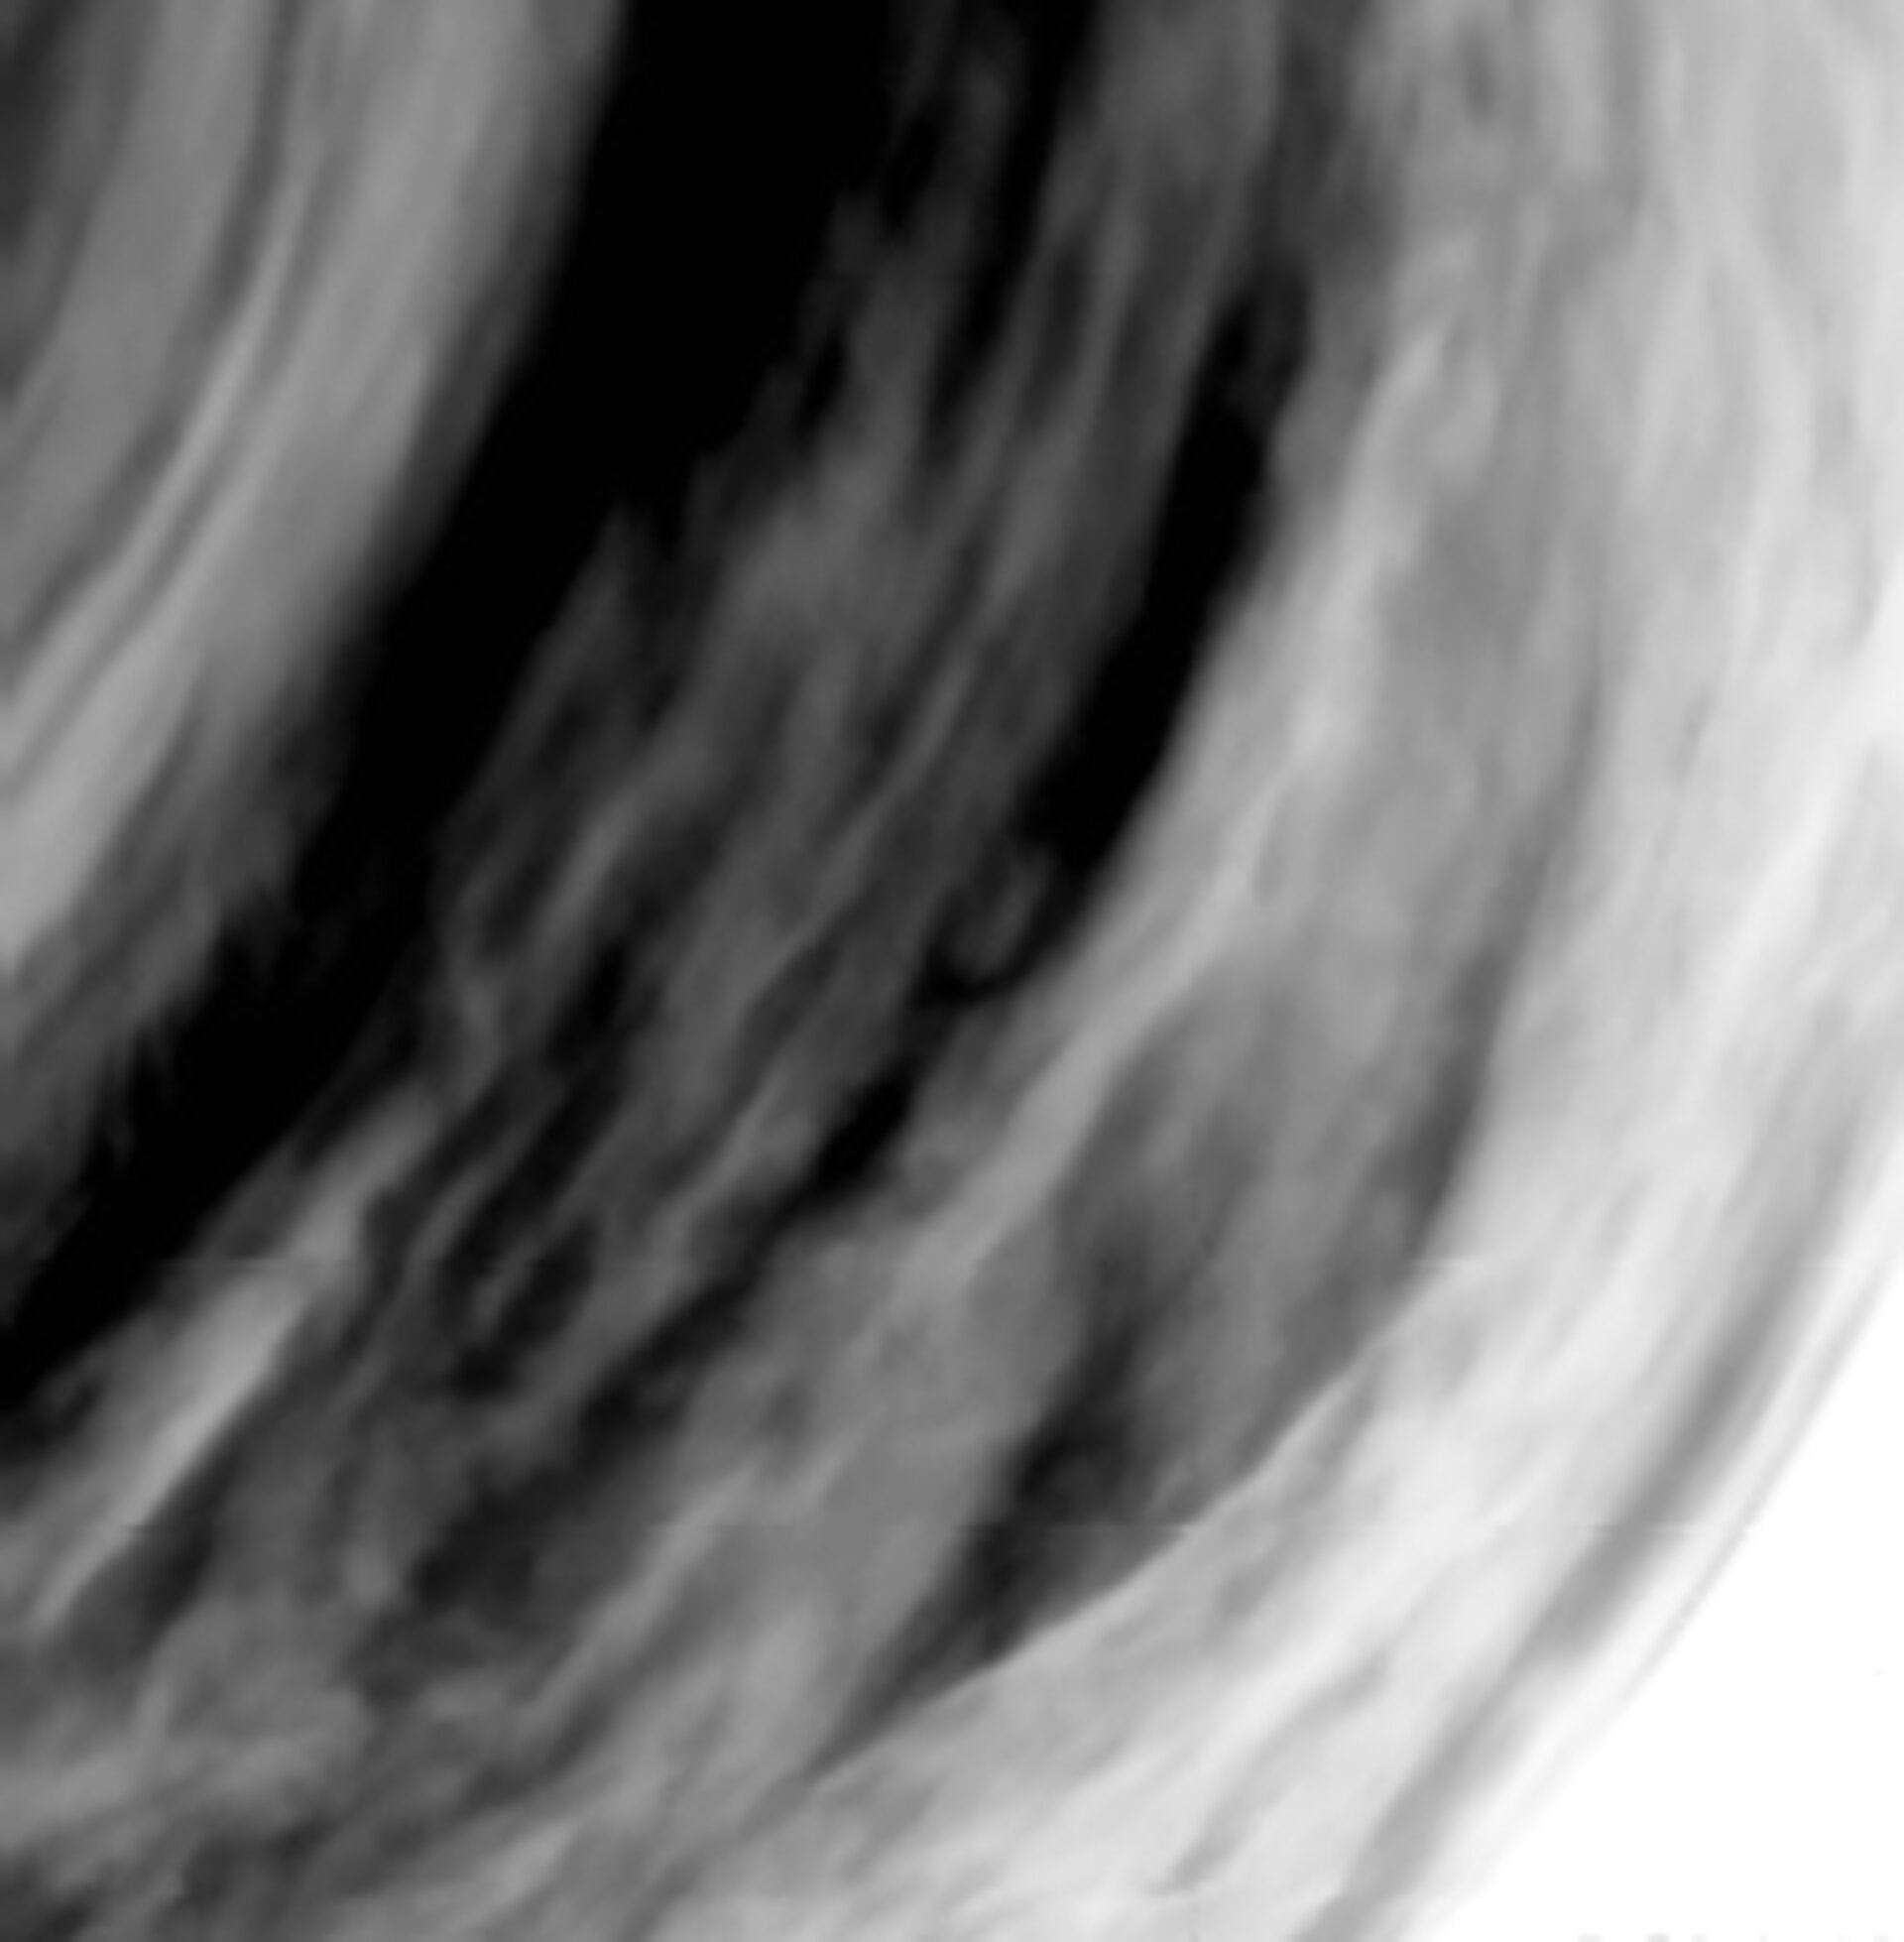 Cloud structures in Venus atmosphere